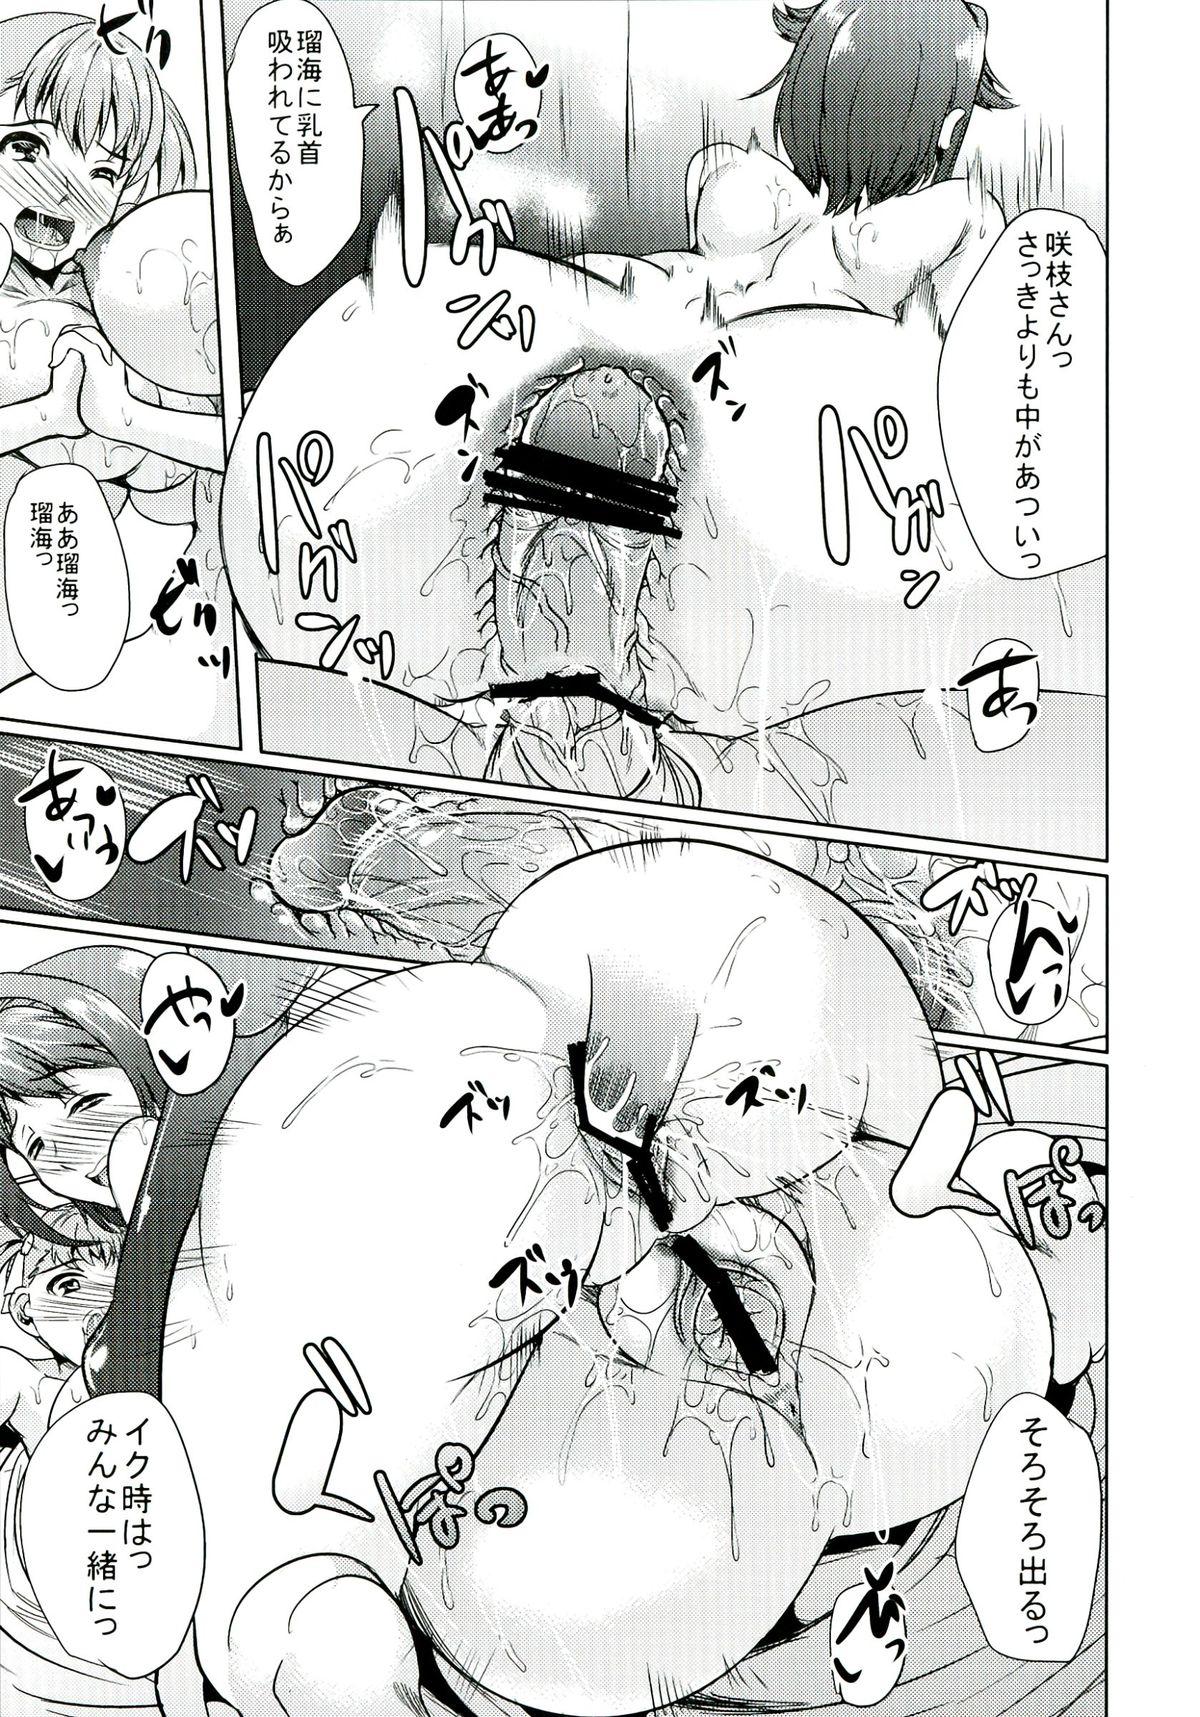 Oyako don Oppai Tokumori Bonyuu Shirudaku de Comic Anthology 19